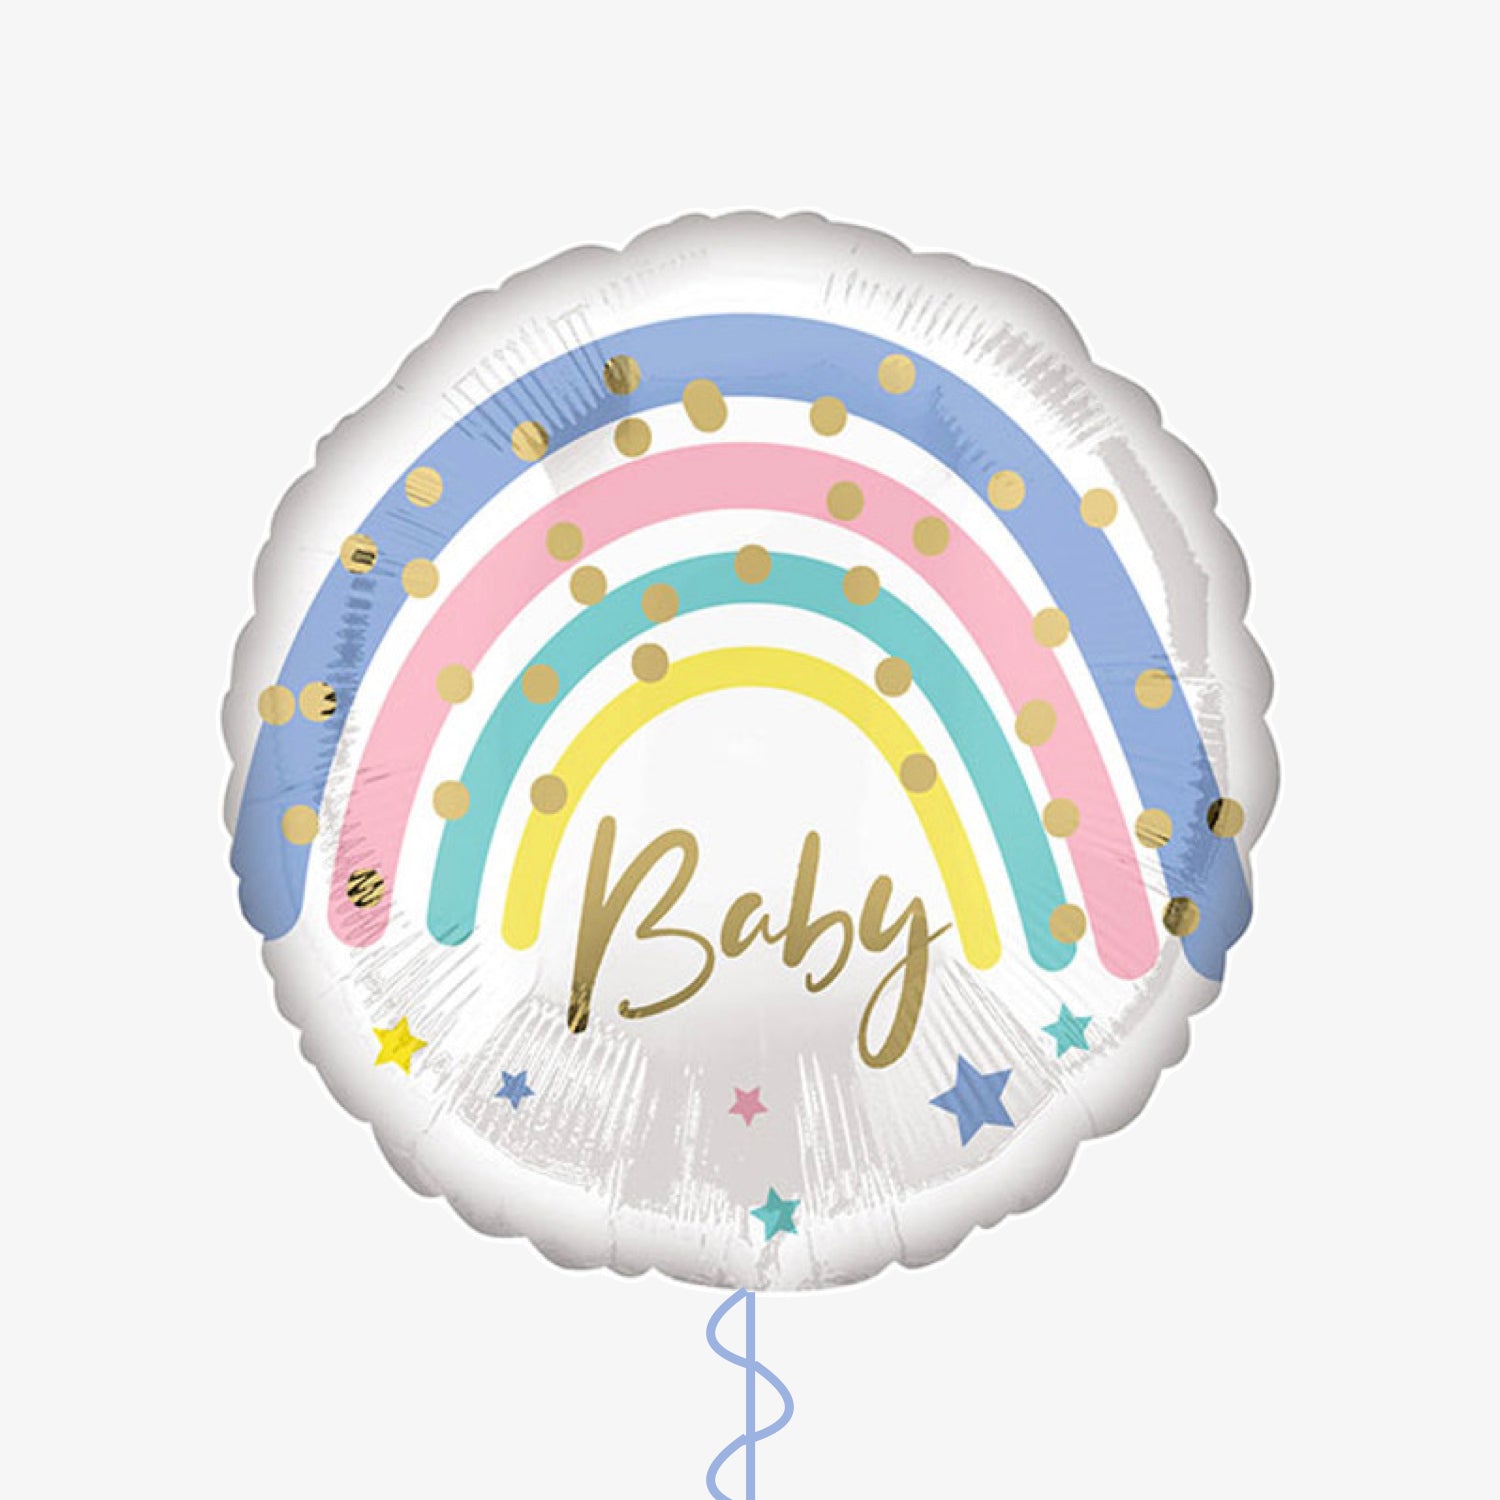 Baby Balloon